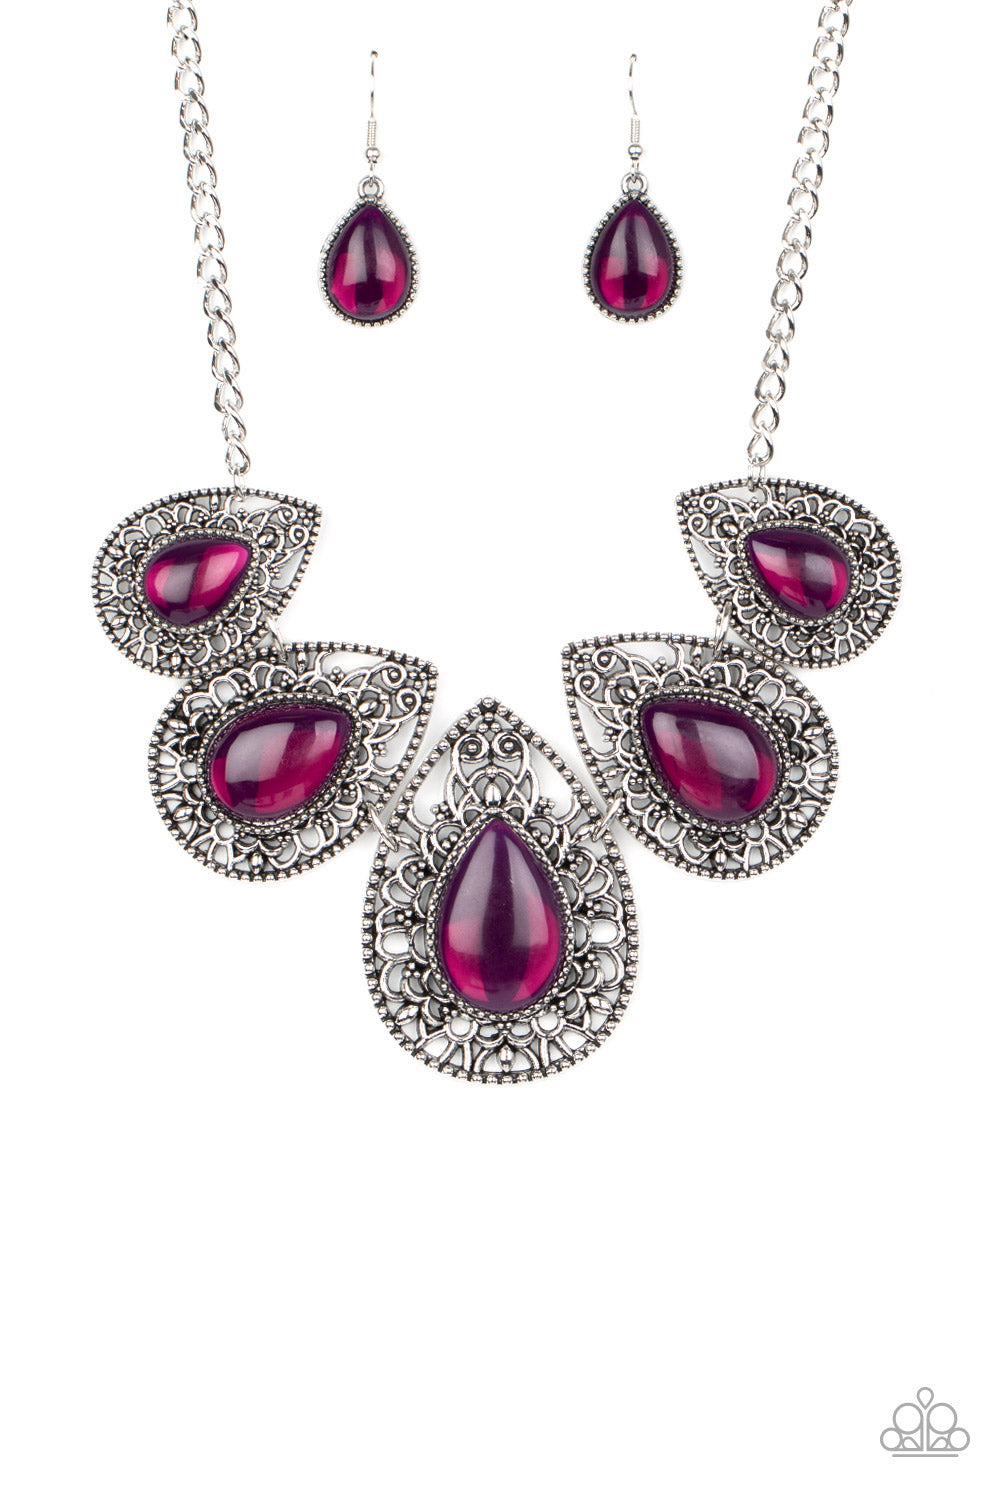 Opal Auras - Paparazzi - Purple Opalescent Teardrop Bead Silver Filigree Necklace